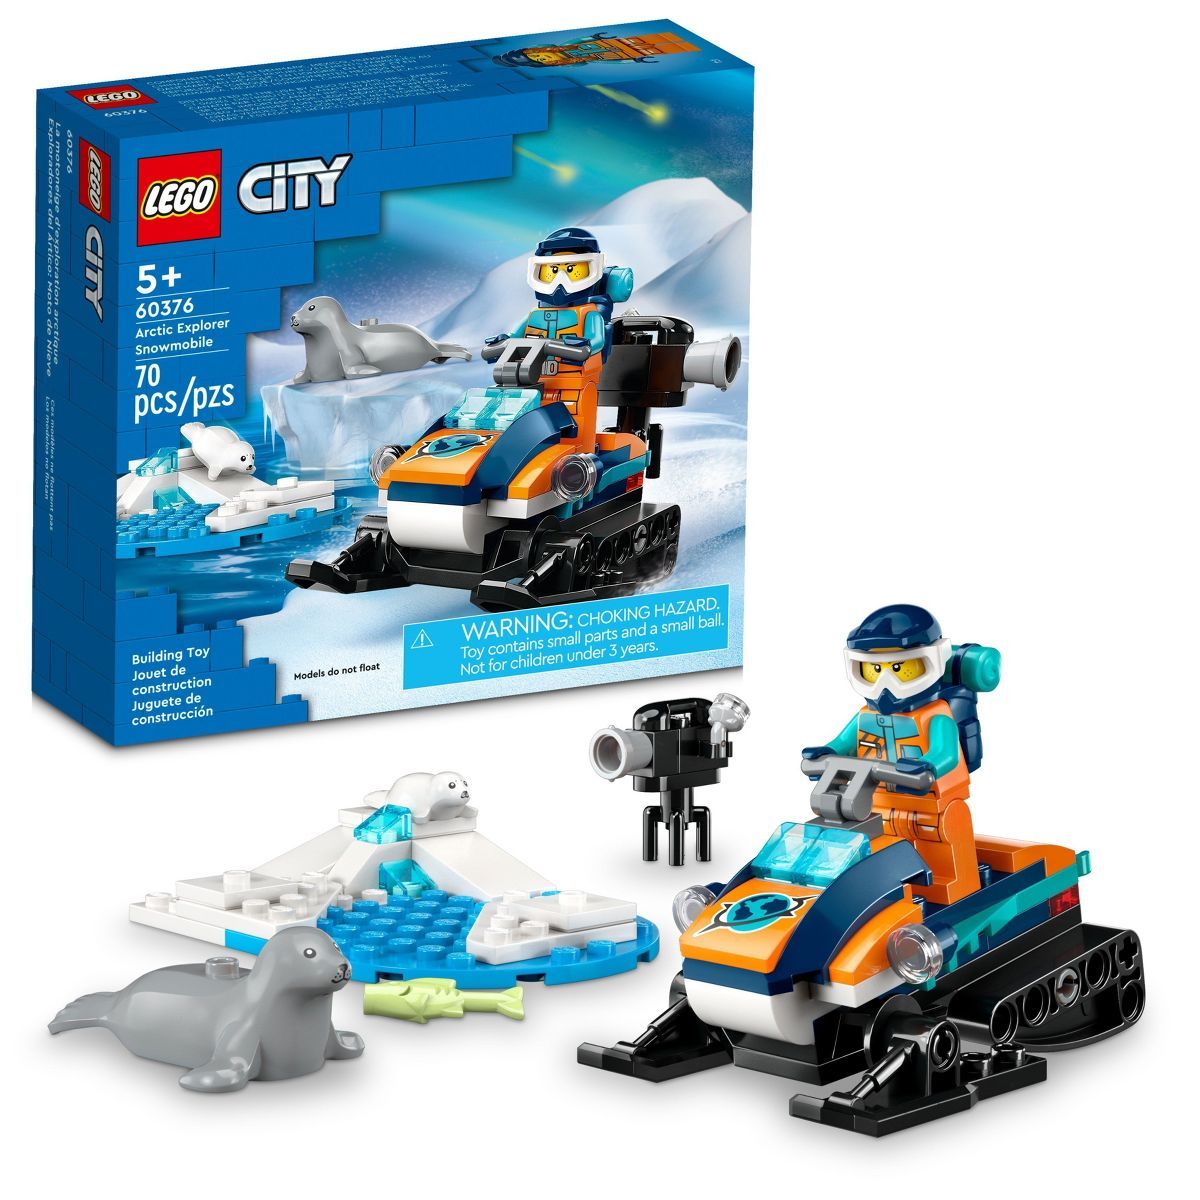 LEGO City Arctic Explorer Snowmobile Building Toy Set 60376 | Target